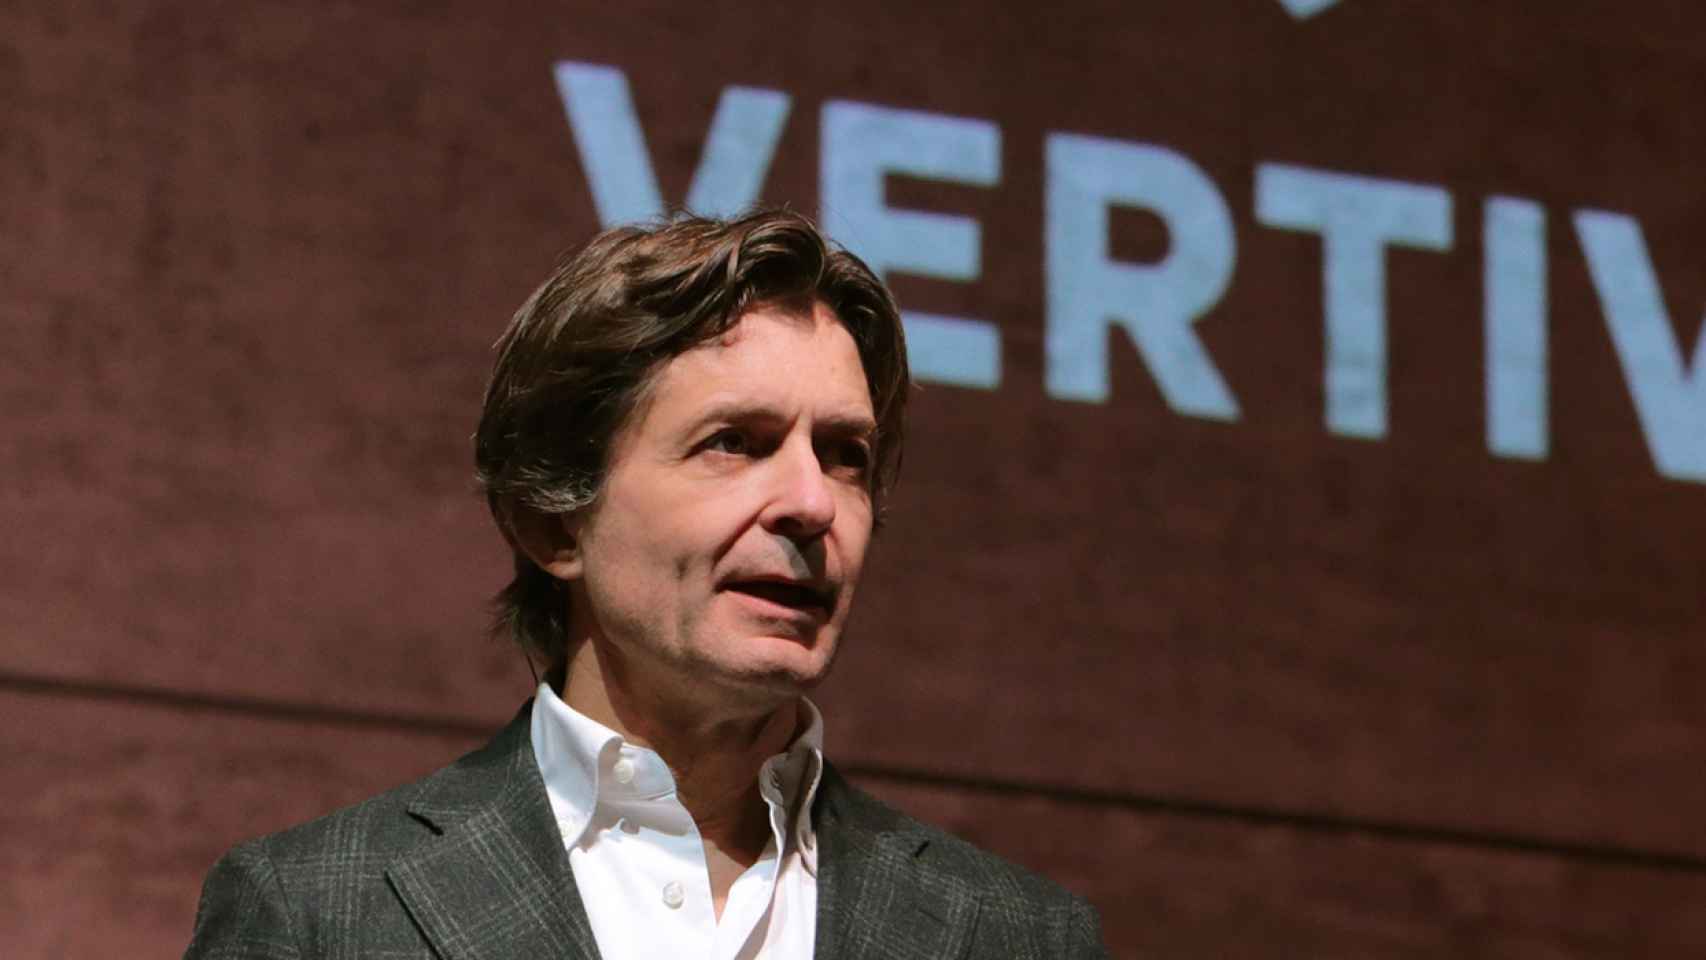 Giordano Albertazzi es el  presidente en EMEA de Vertiv.